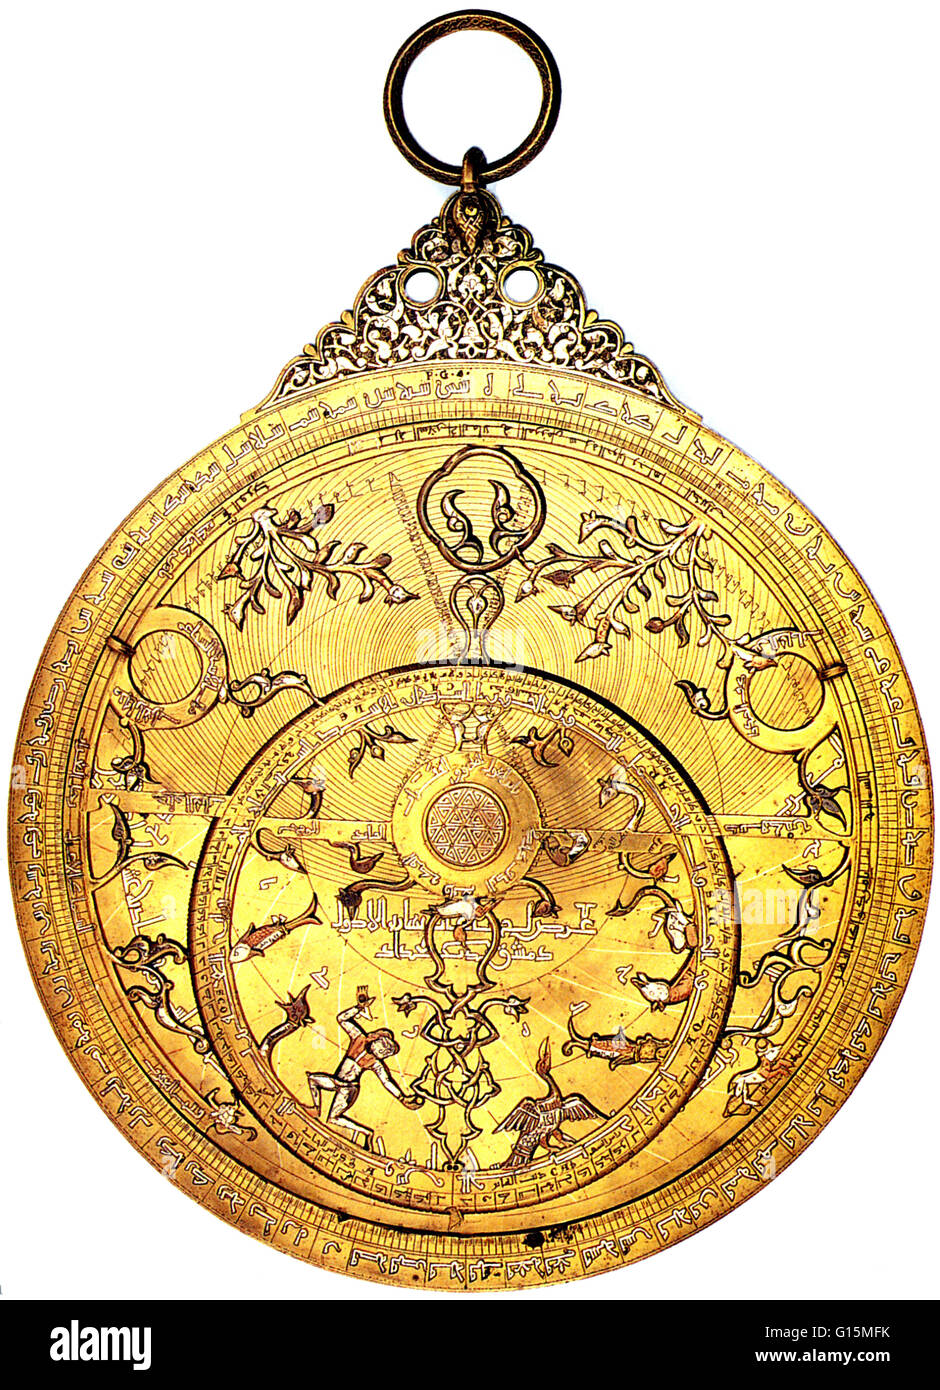 Un astrolabio è un elaborato inclinometro, storicamente usato dagli astronomi, navigatori e gli astrologi. I suoi molti usi includono il posizionamento e la previsione delle posizioni del sole e della Luna, dei pianeti e stelle, determinando il tempo locale dato agli enti locali di latitudine e a Vic Foto Stock